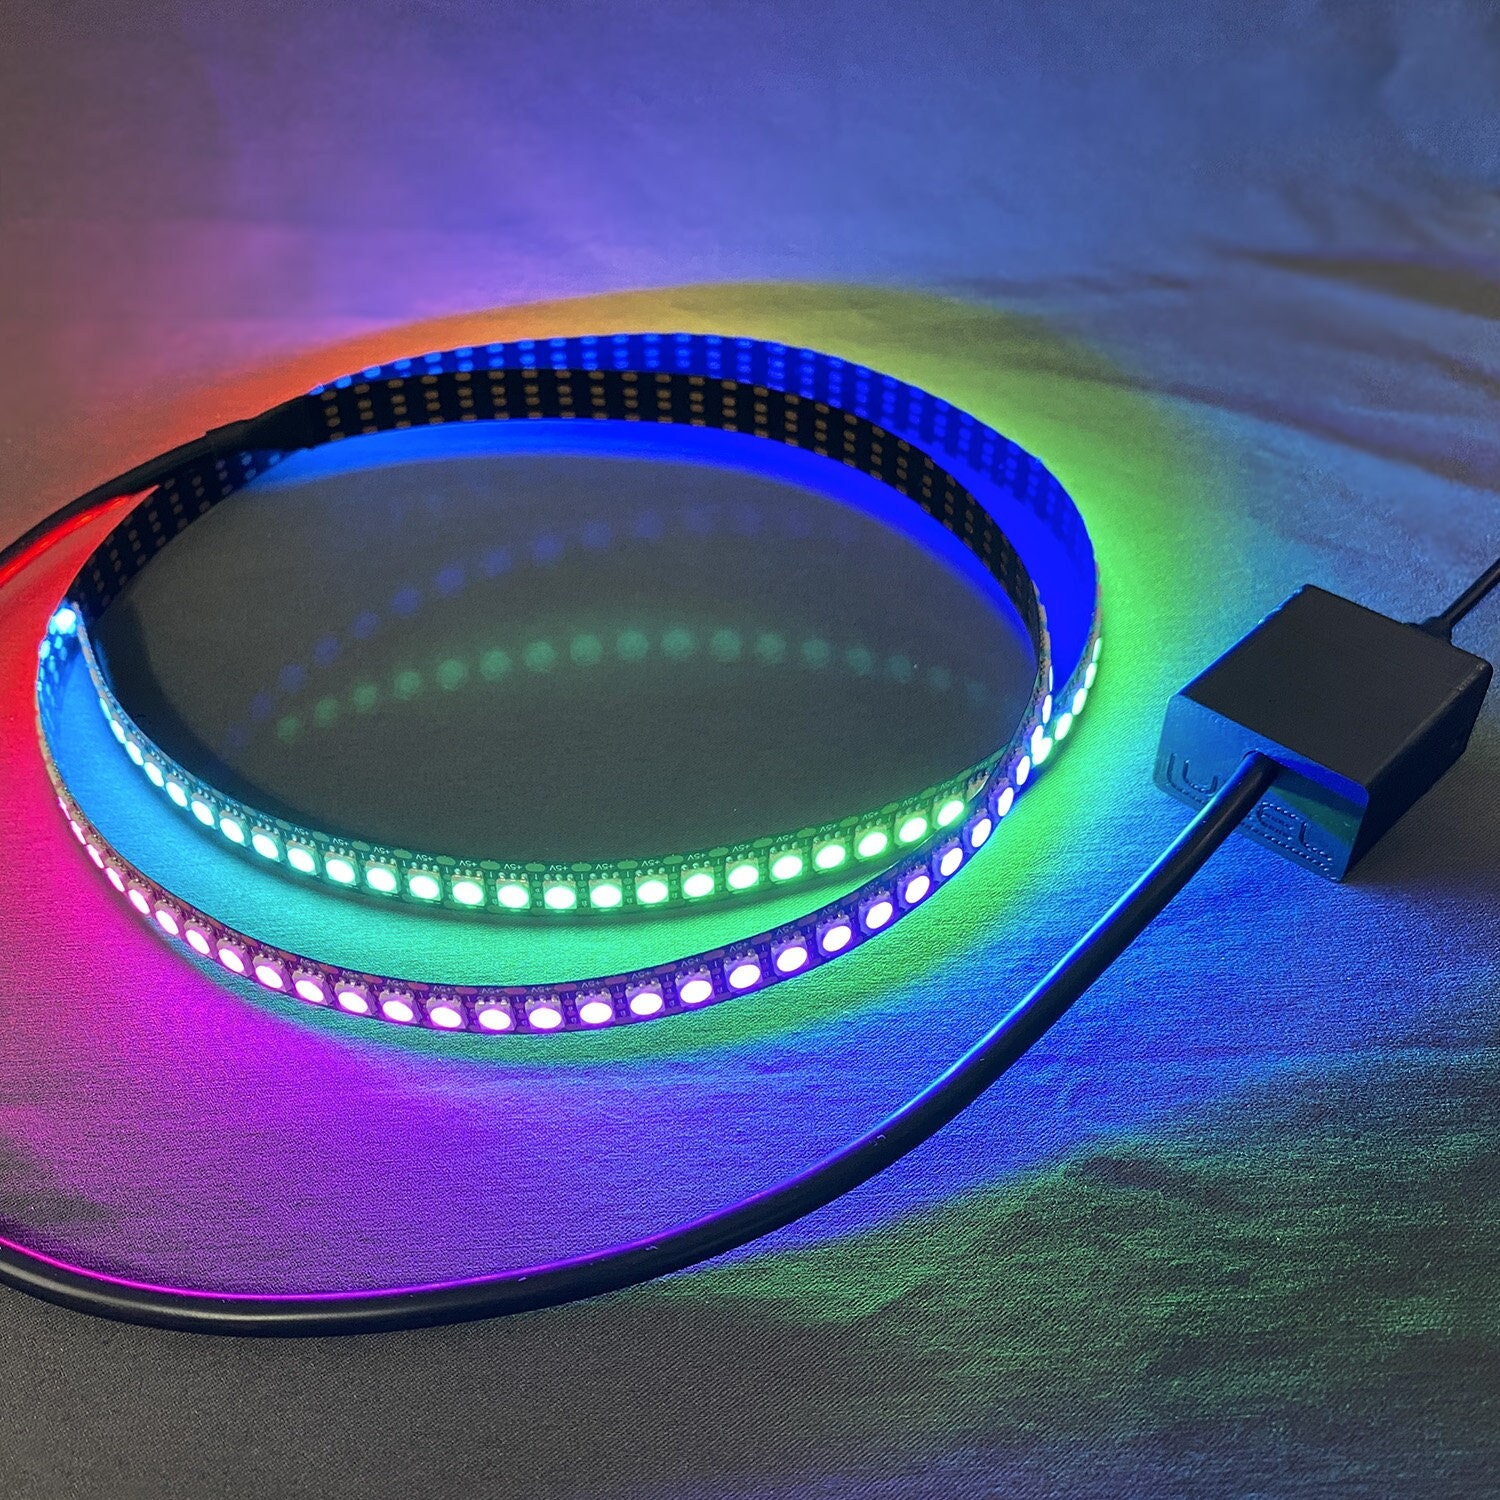 USB LED Streifen Licht mit Batterie Box DC5V Flexible Neon Zeichen